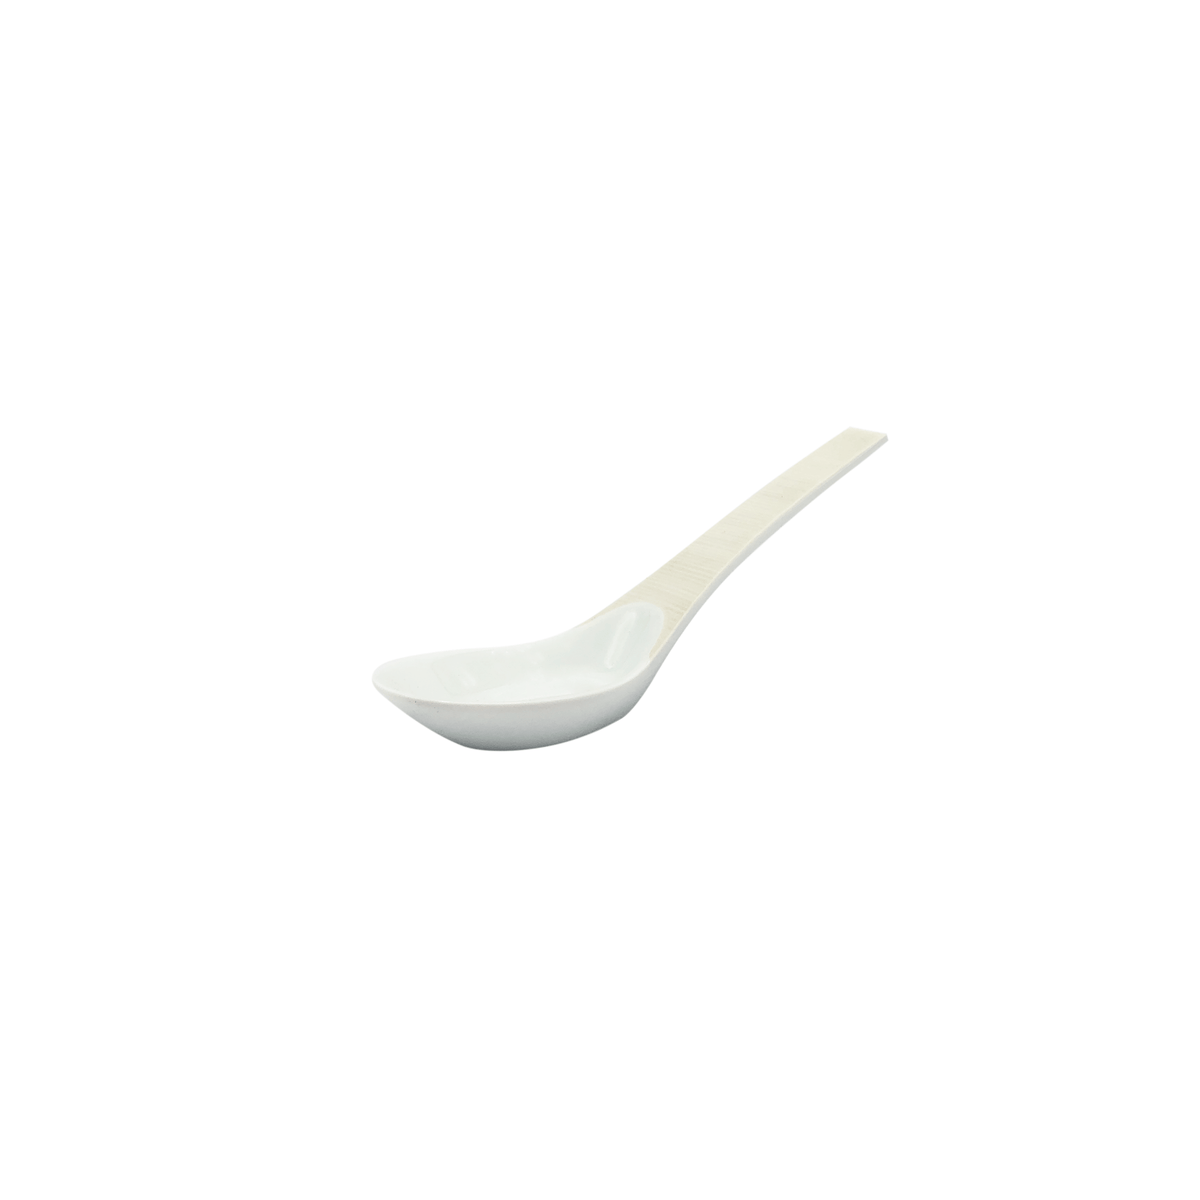 HEMISPHERE Vanilla - Asian spoon